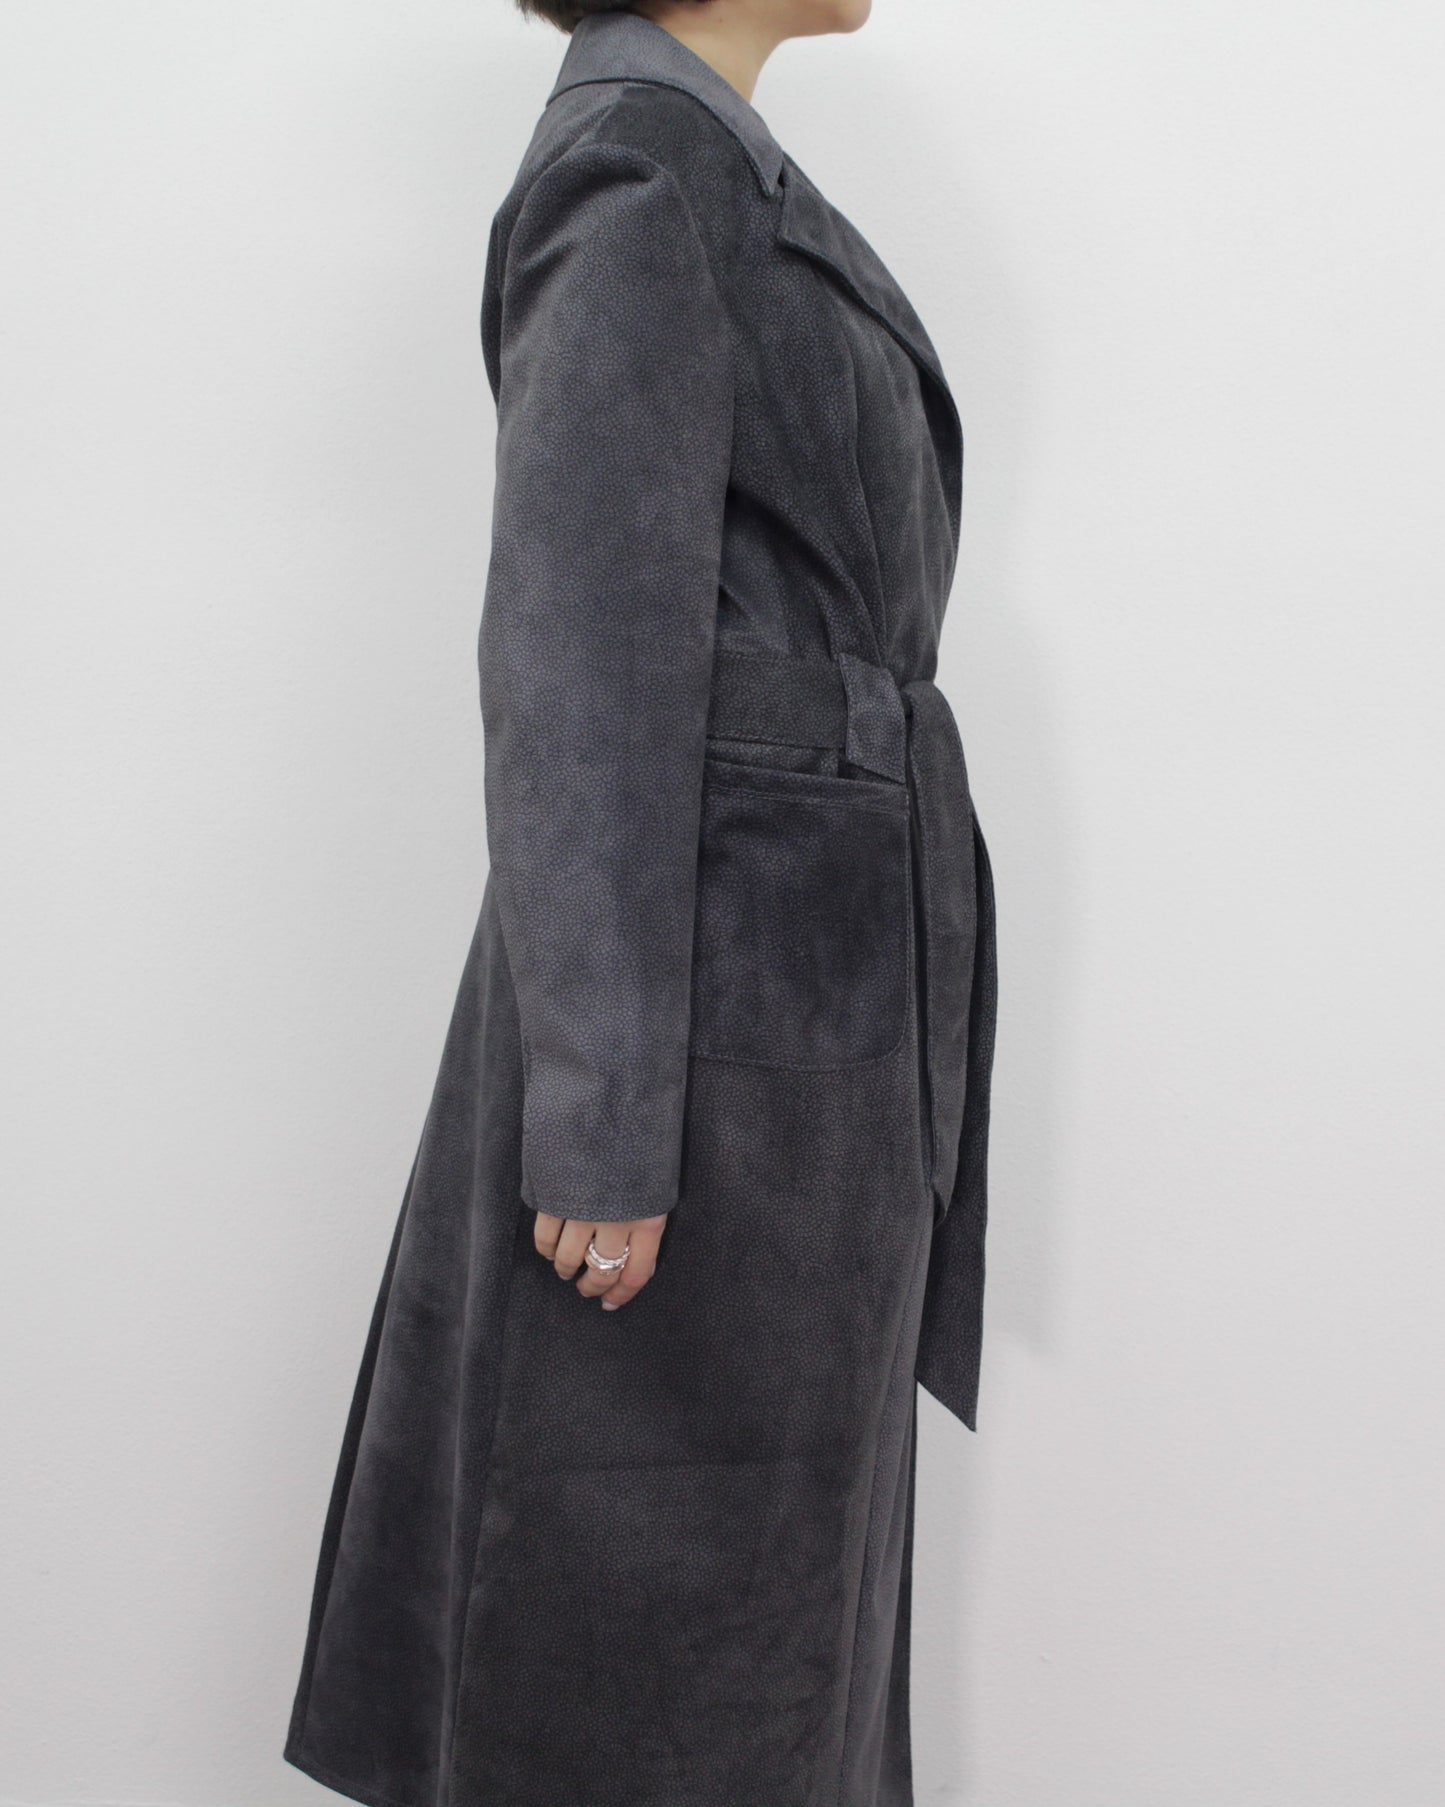 Manteau en cuir suédé imprimé "Ferdinando" par Ferdinando Patermo